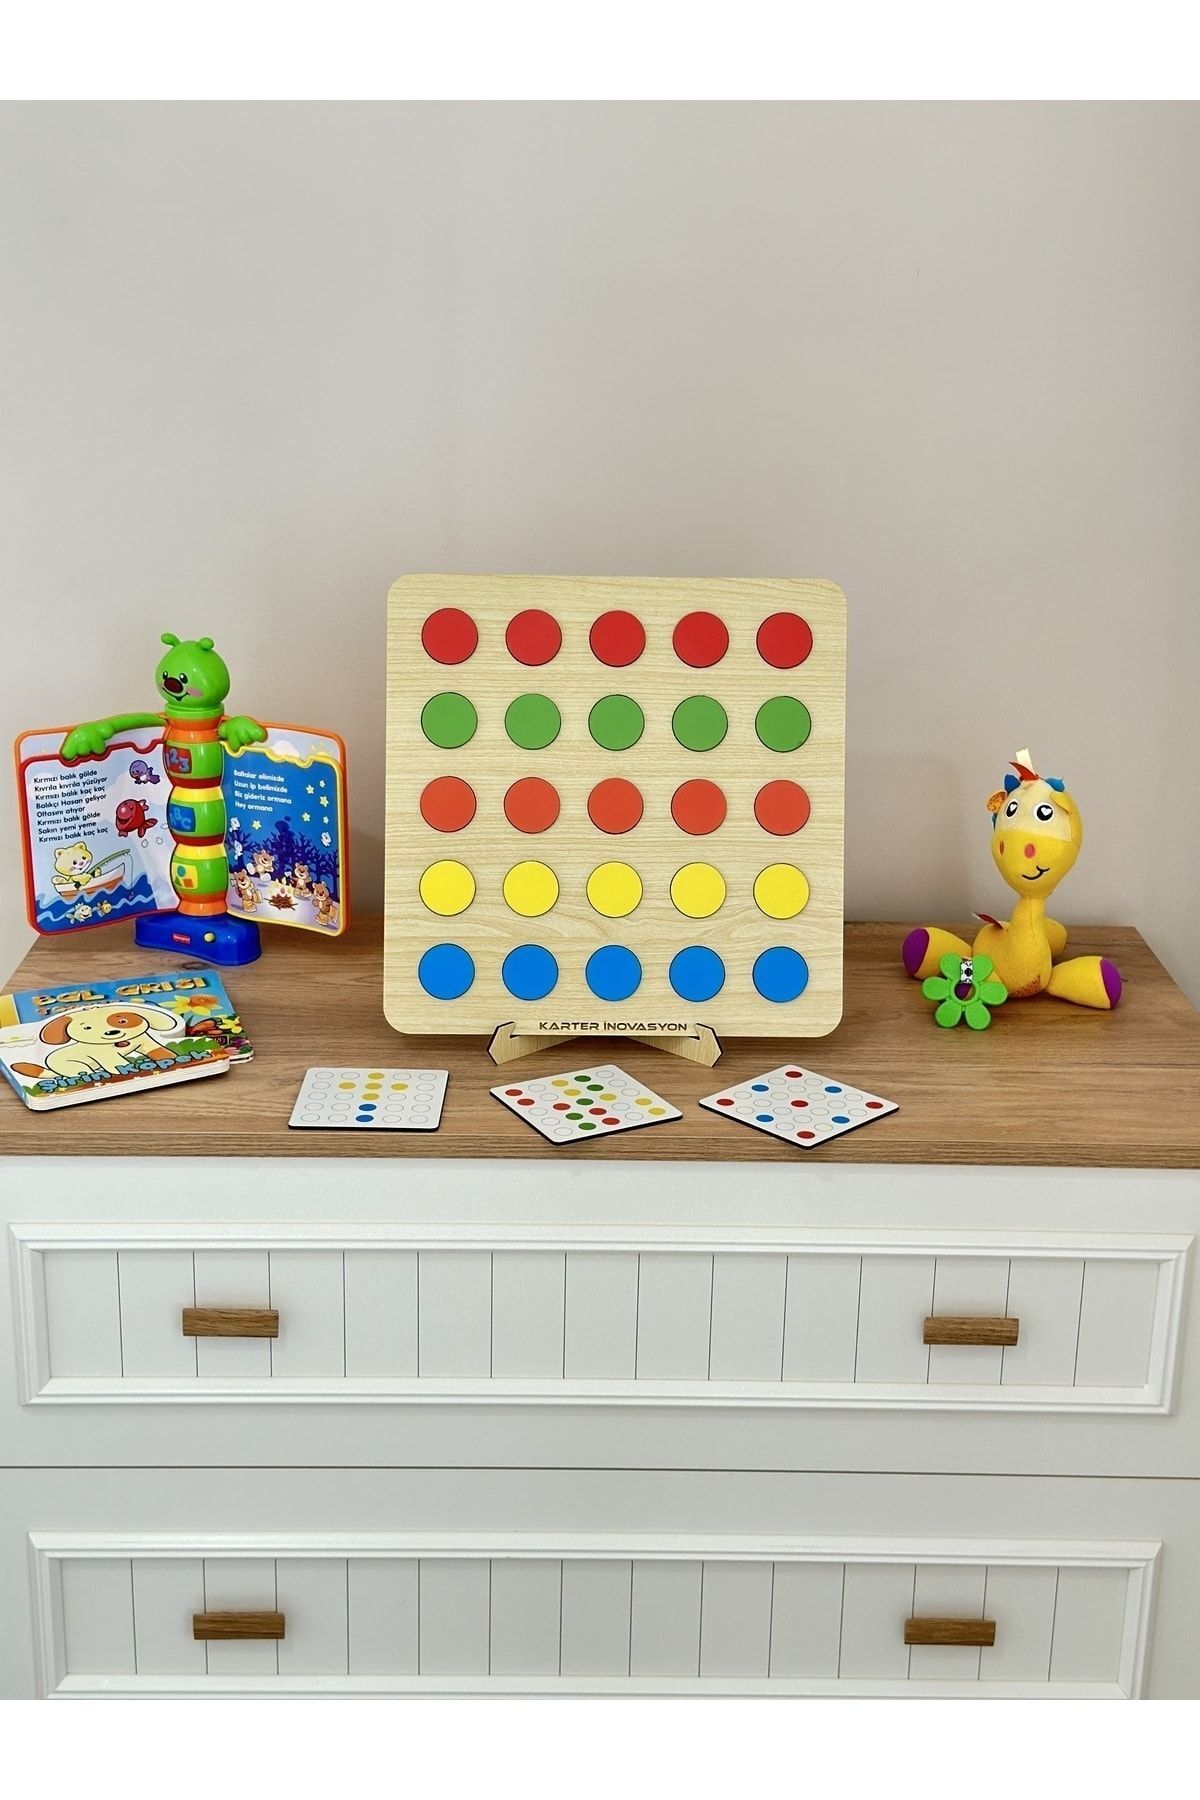 Karter İnovasyon Montessori Egitici Ahsap Oyuncak, Egitici Kutu Oyunu, Ahsap Esleme Oyuncagı, Renk Esleme-Bulma Oyunu